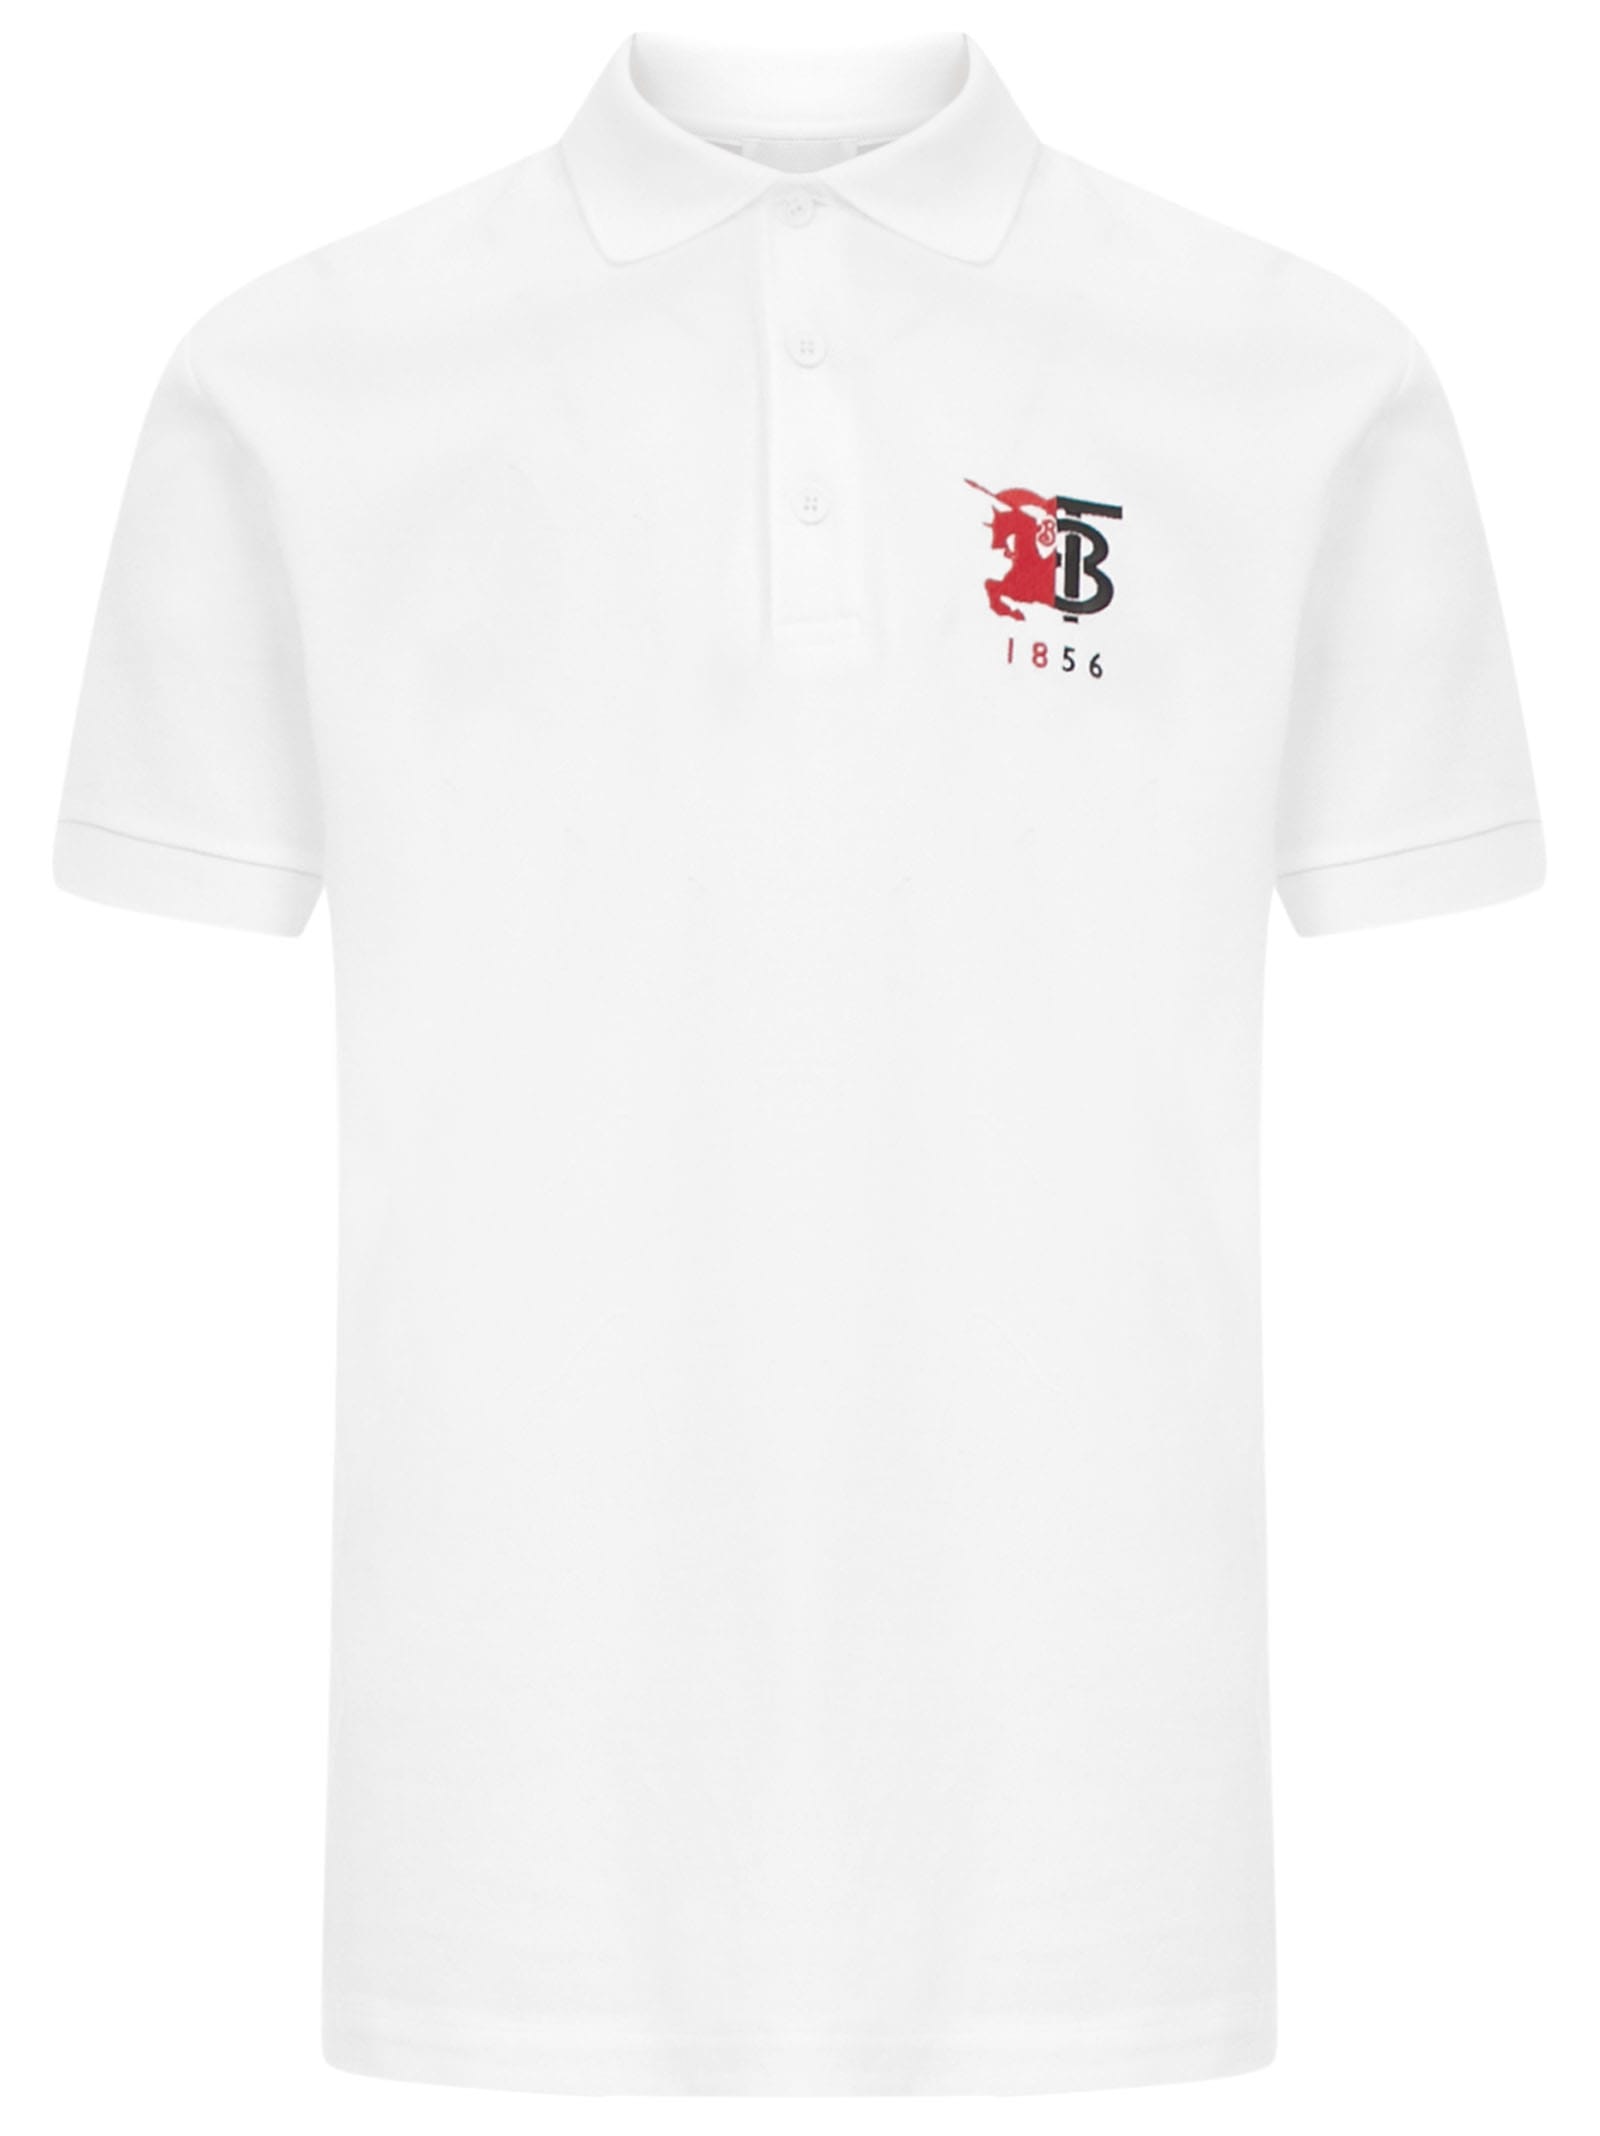 burberry polo shirt white